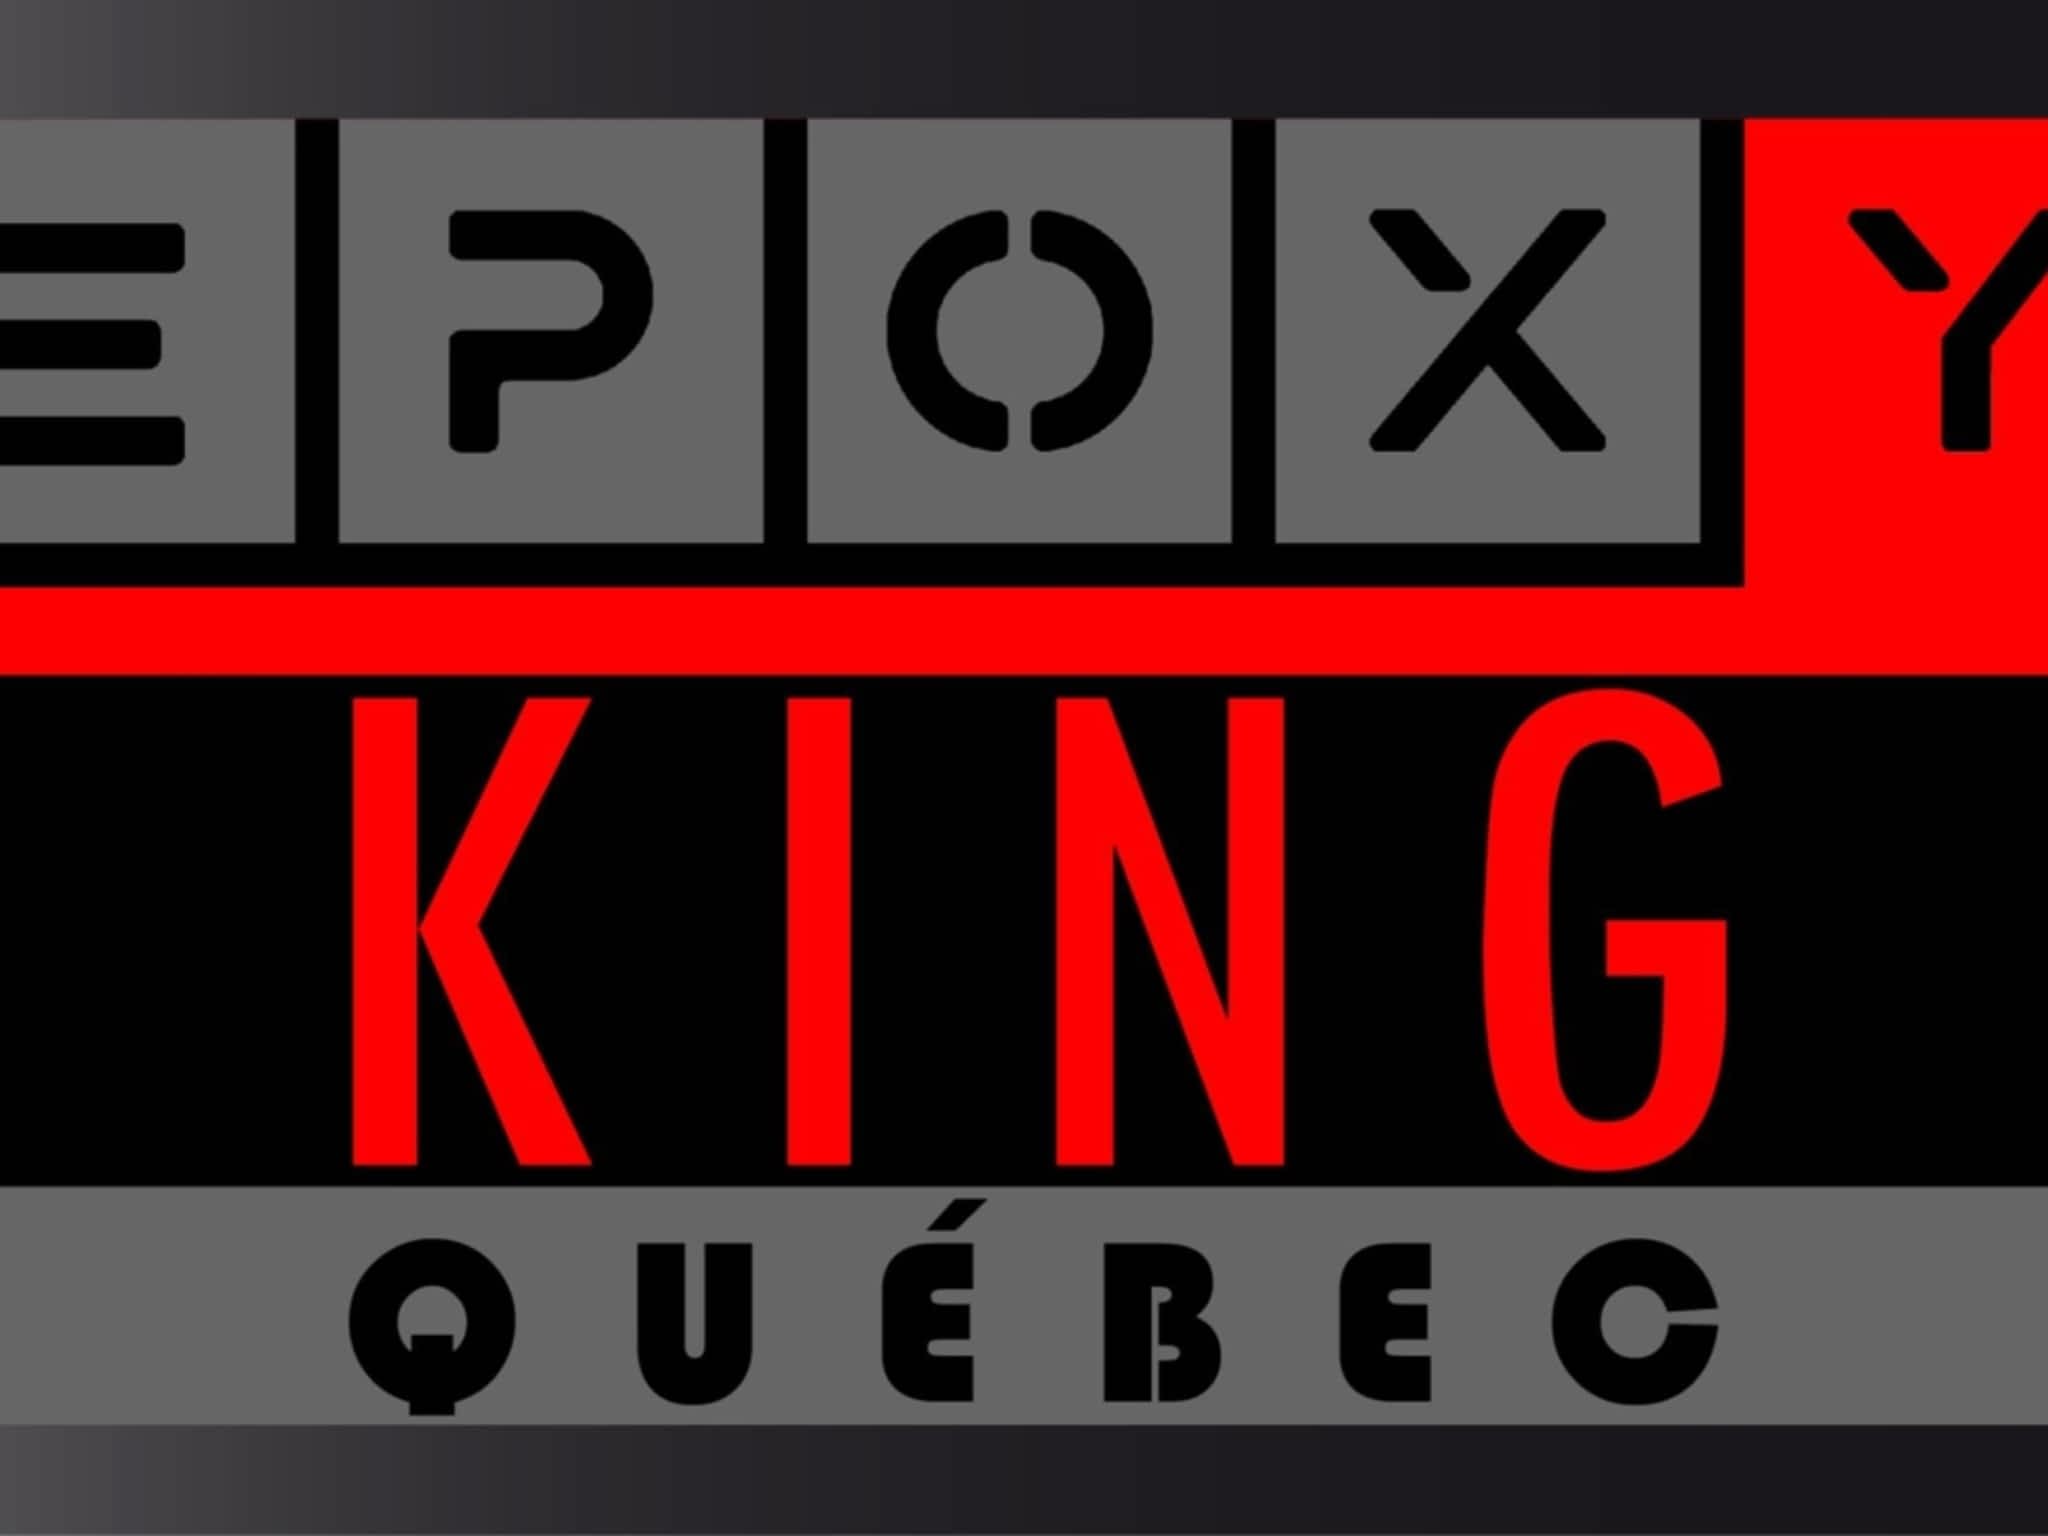 photo Epoxy King Québec